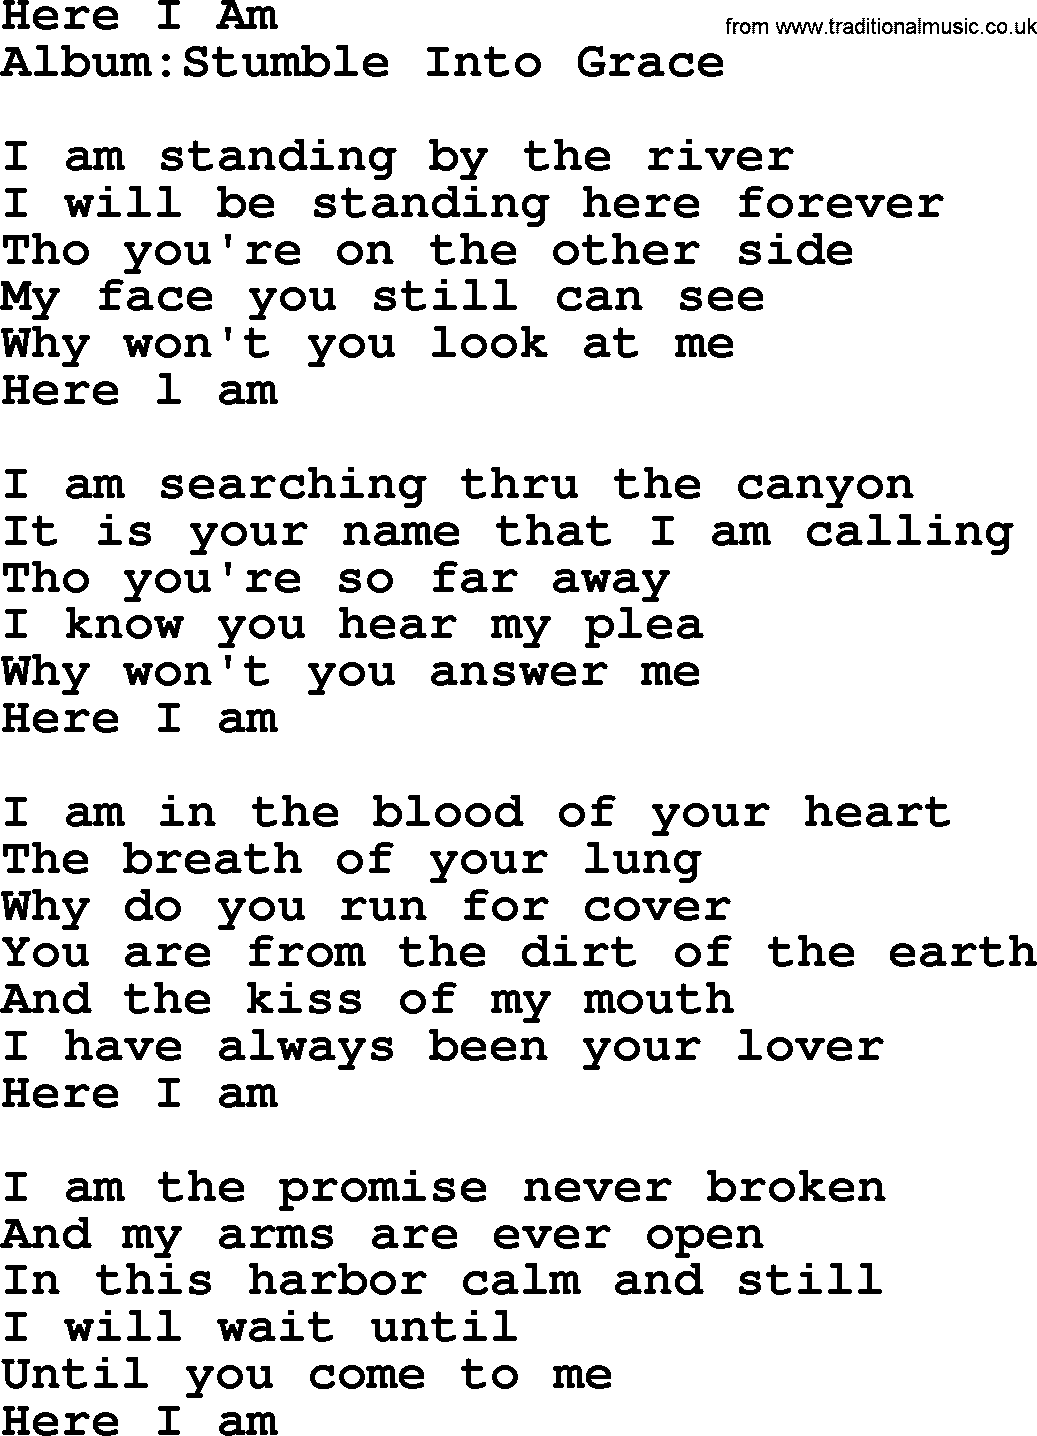 Emmylou Harris song: Here I Am lyrics